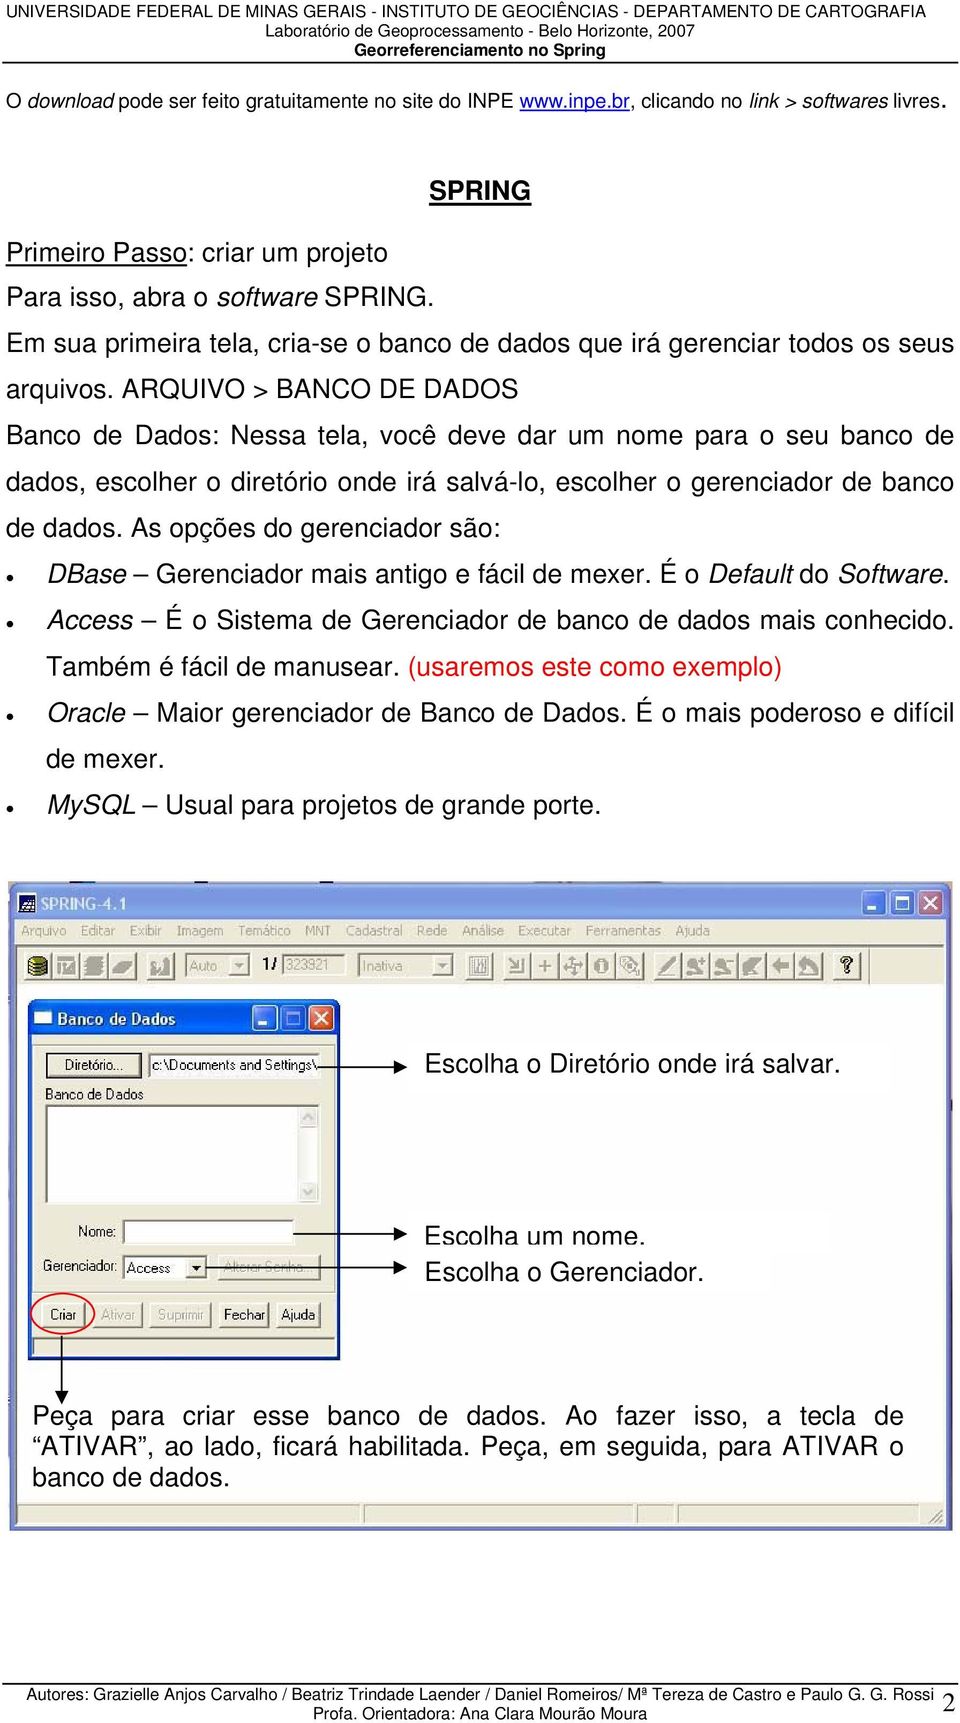 ARQUIVO > BANCO DE DADOS Banco de Dados: Nessa tela, você deve dar um nome para o seu banco de dados, escolher o diretório onde irá salvá-lo, escolher o gerenciador de banco de dados.